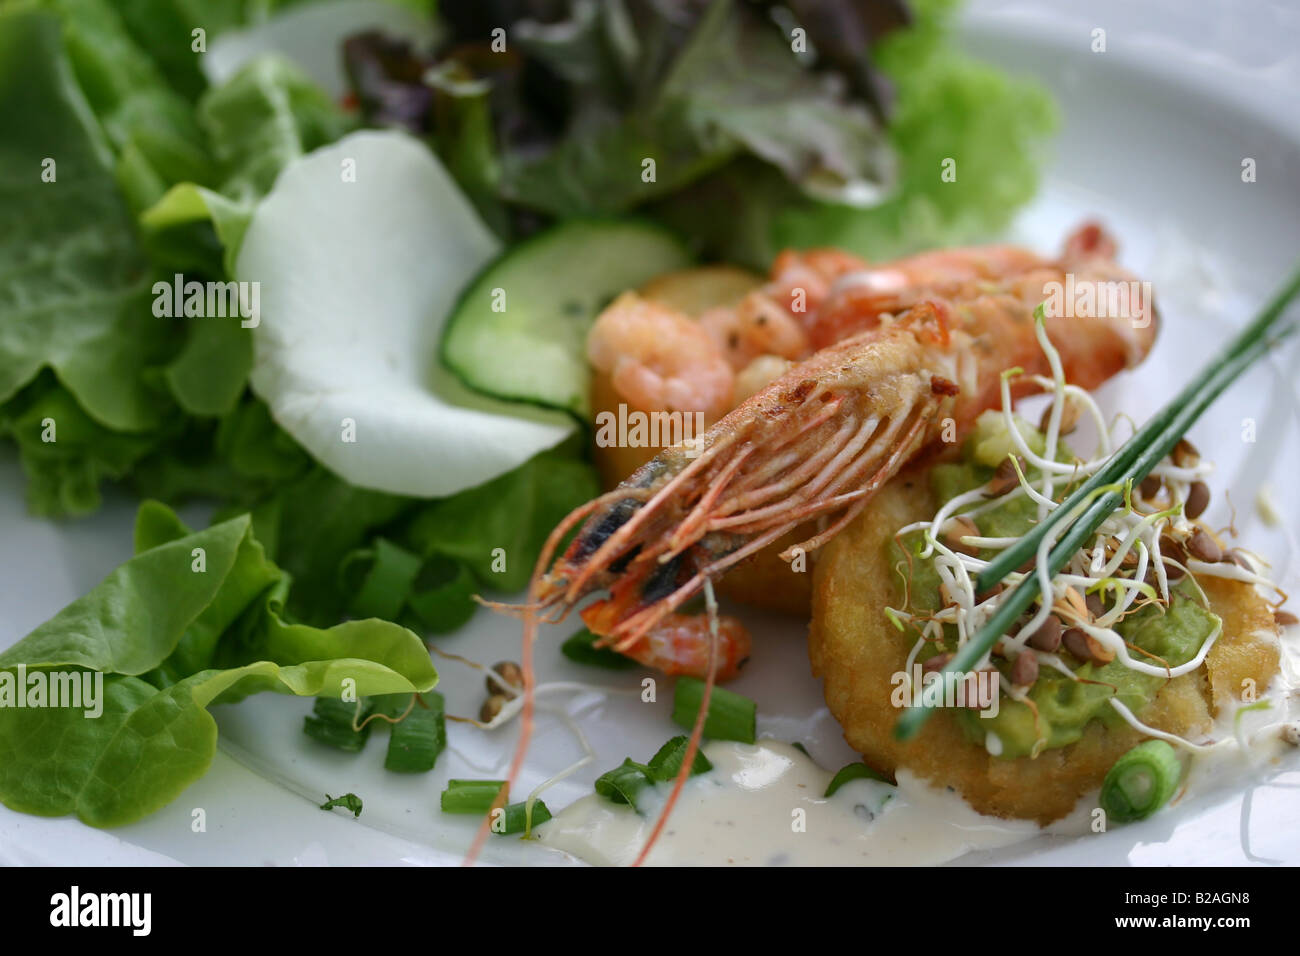 Starter-Mahlzeit bestehend aus Garnelen, Shrimps, Rosenkohl, Zwiebeln und Garnitur auf einem Salatbett Stockfoto